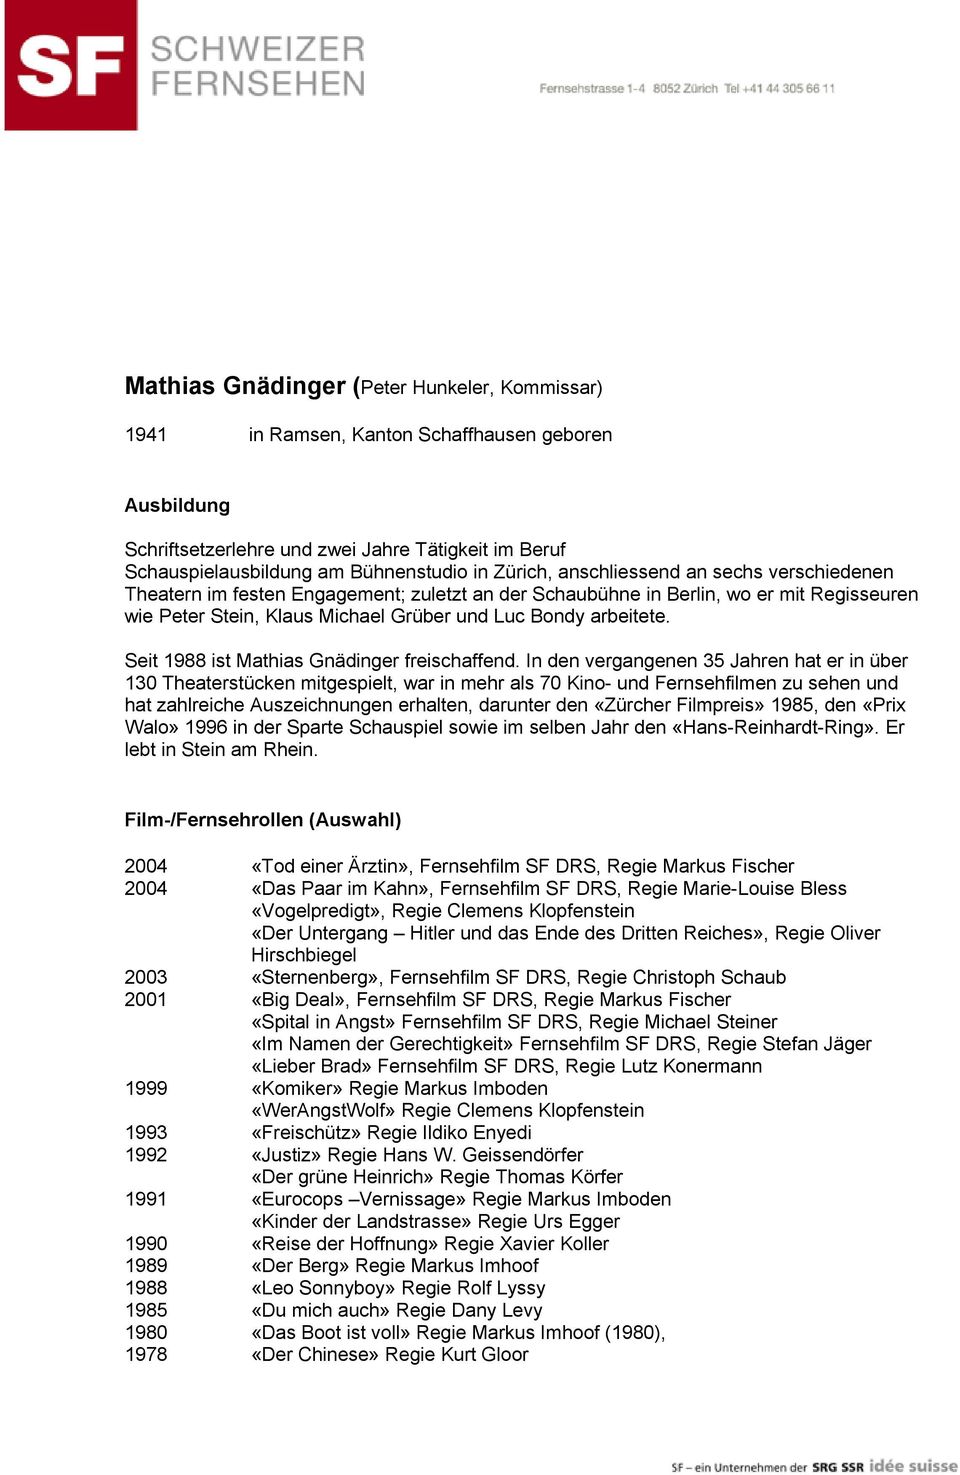 Seit 1988 ist Mathias Gnädinger freischaffend.